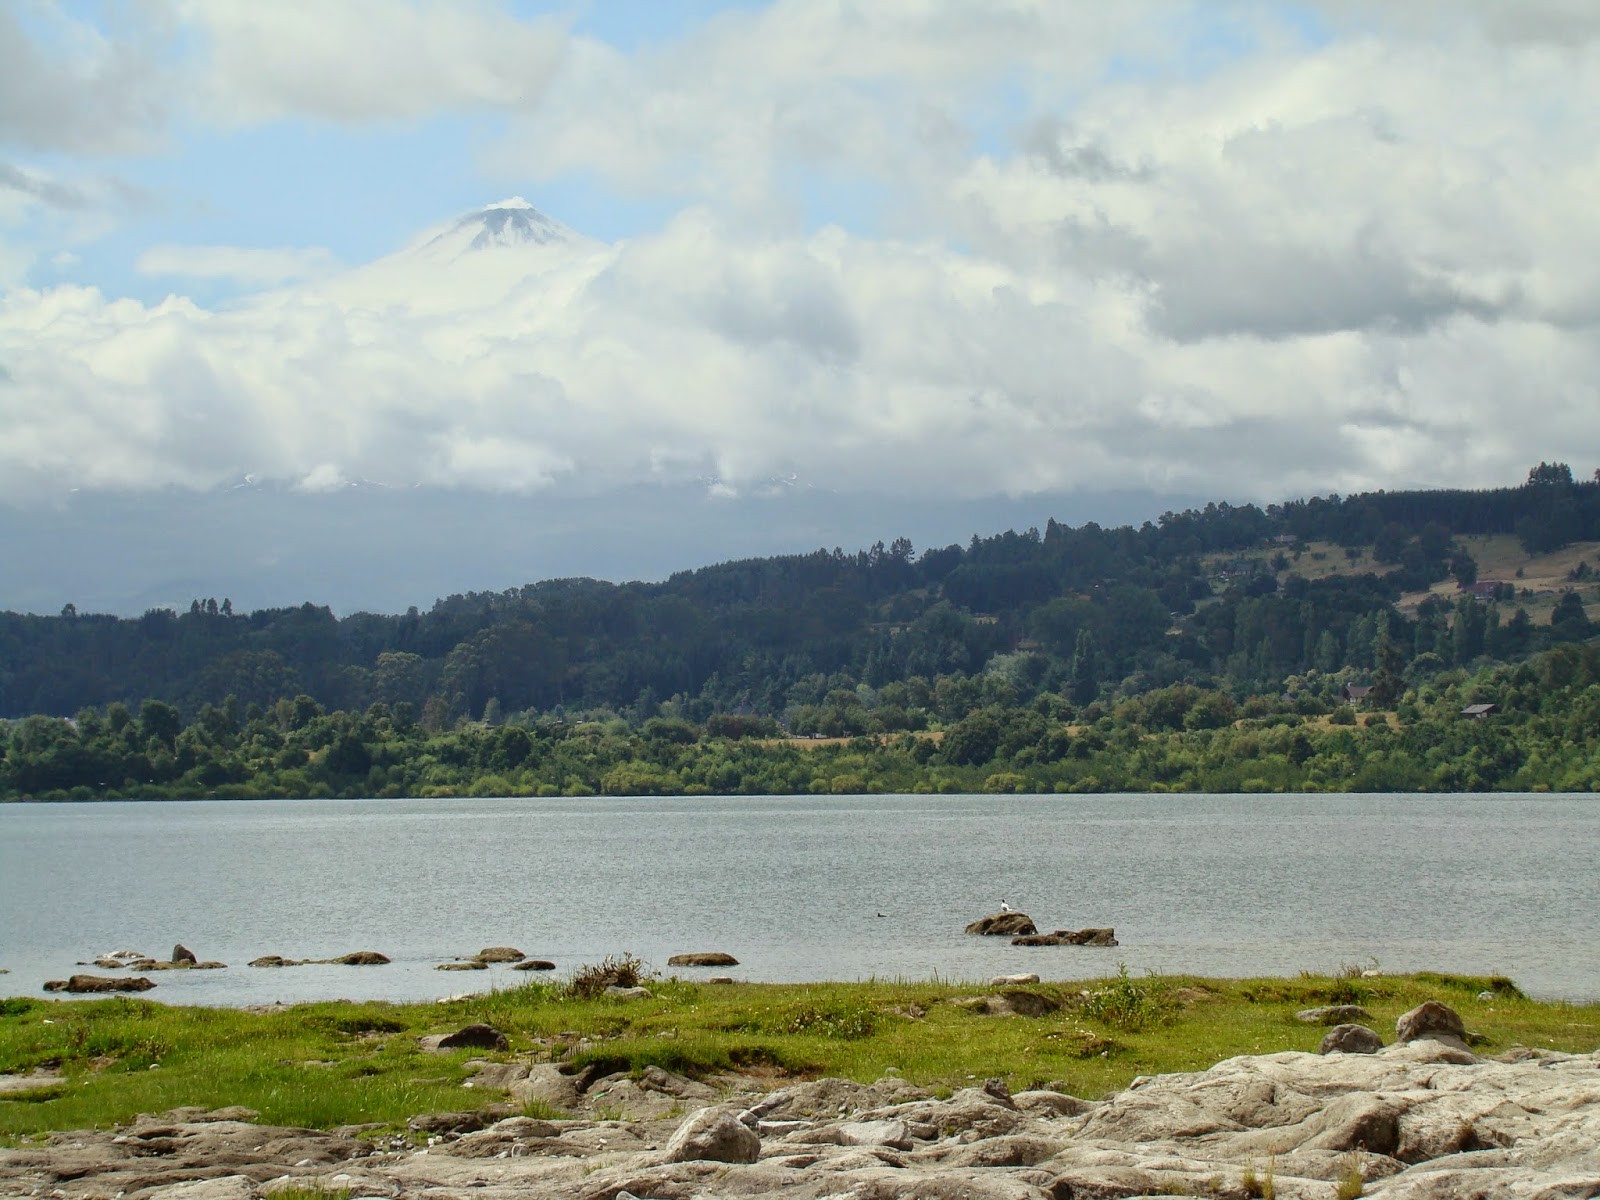 Lago e a pontinha do Vulco Villarrica, escondido atrs das nuvens.